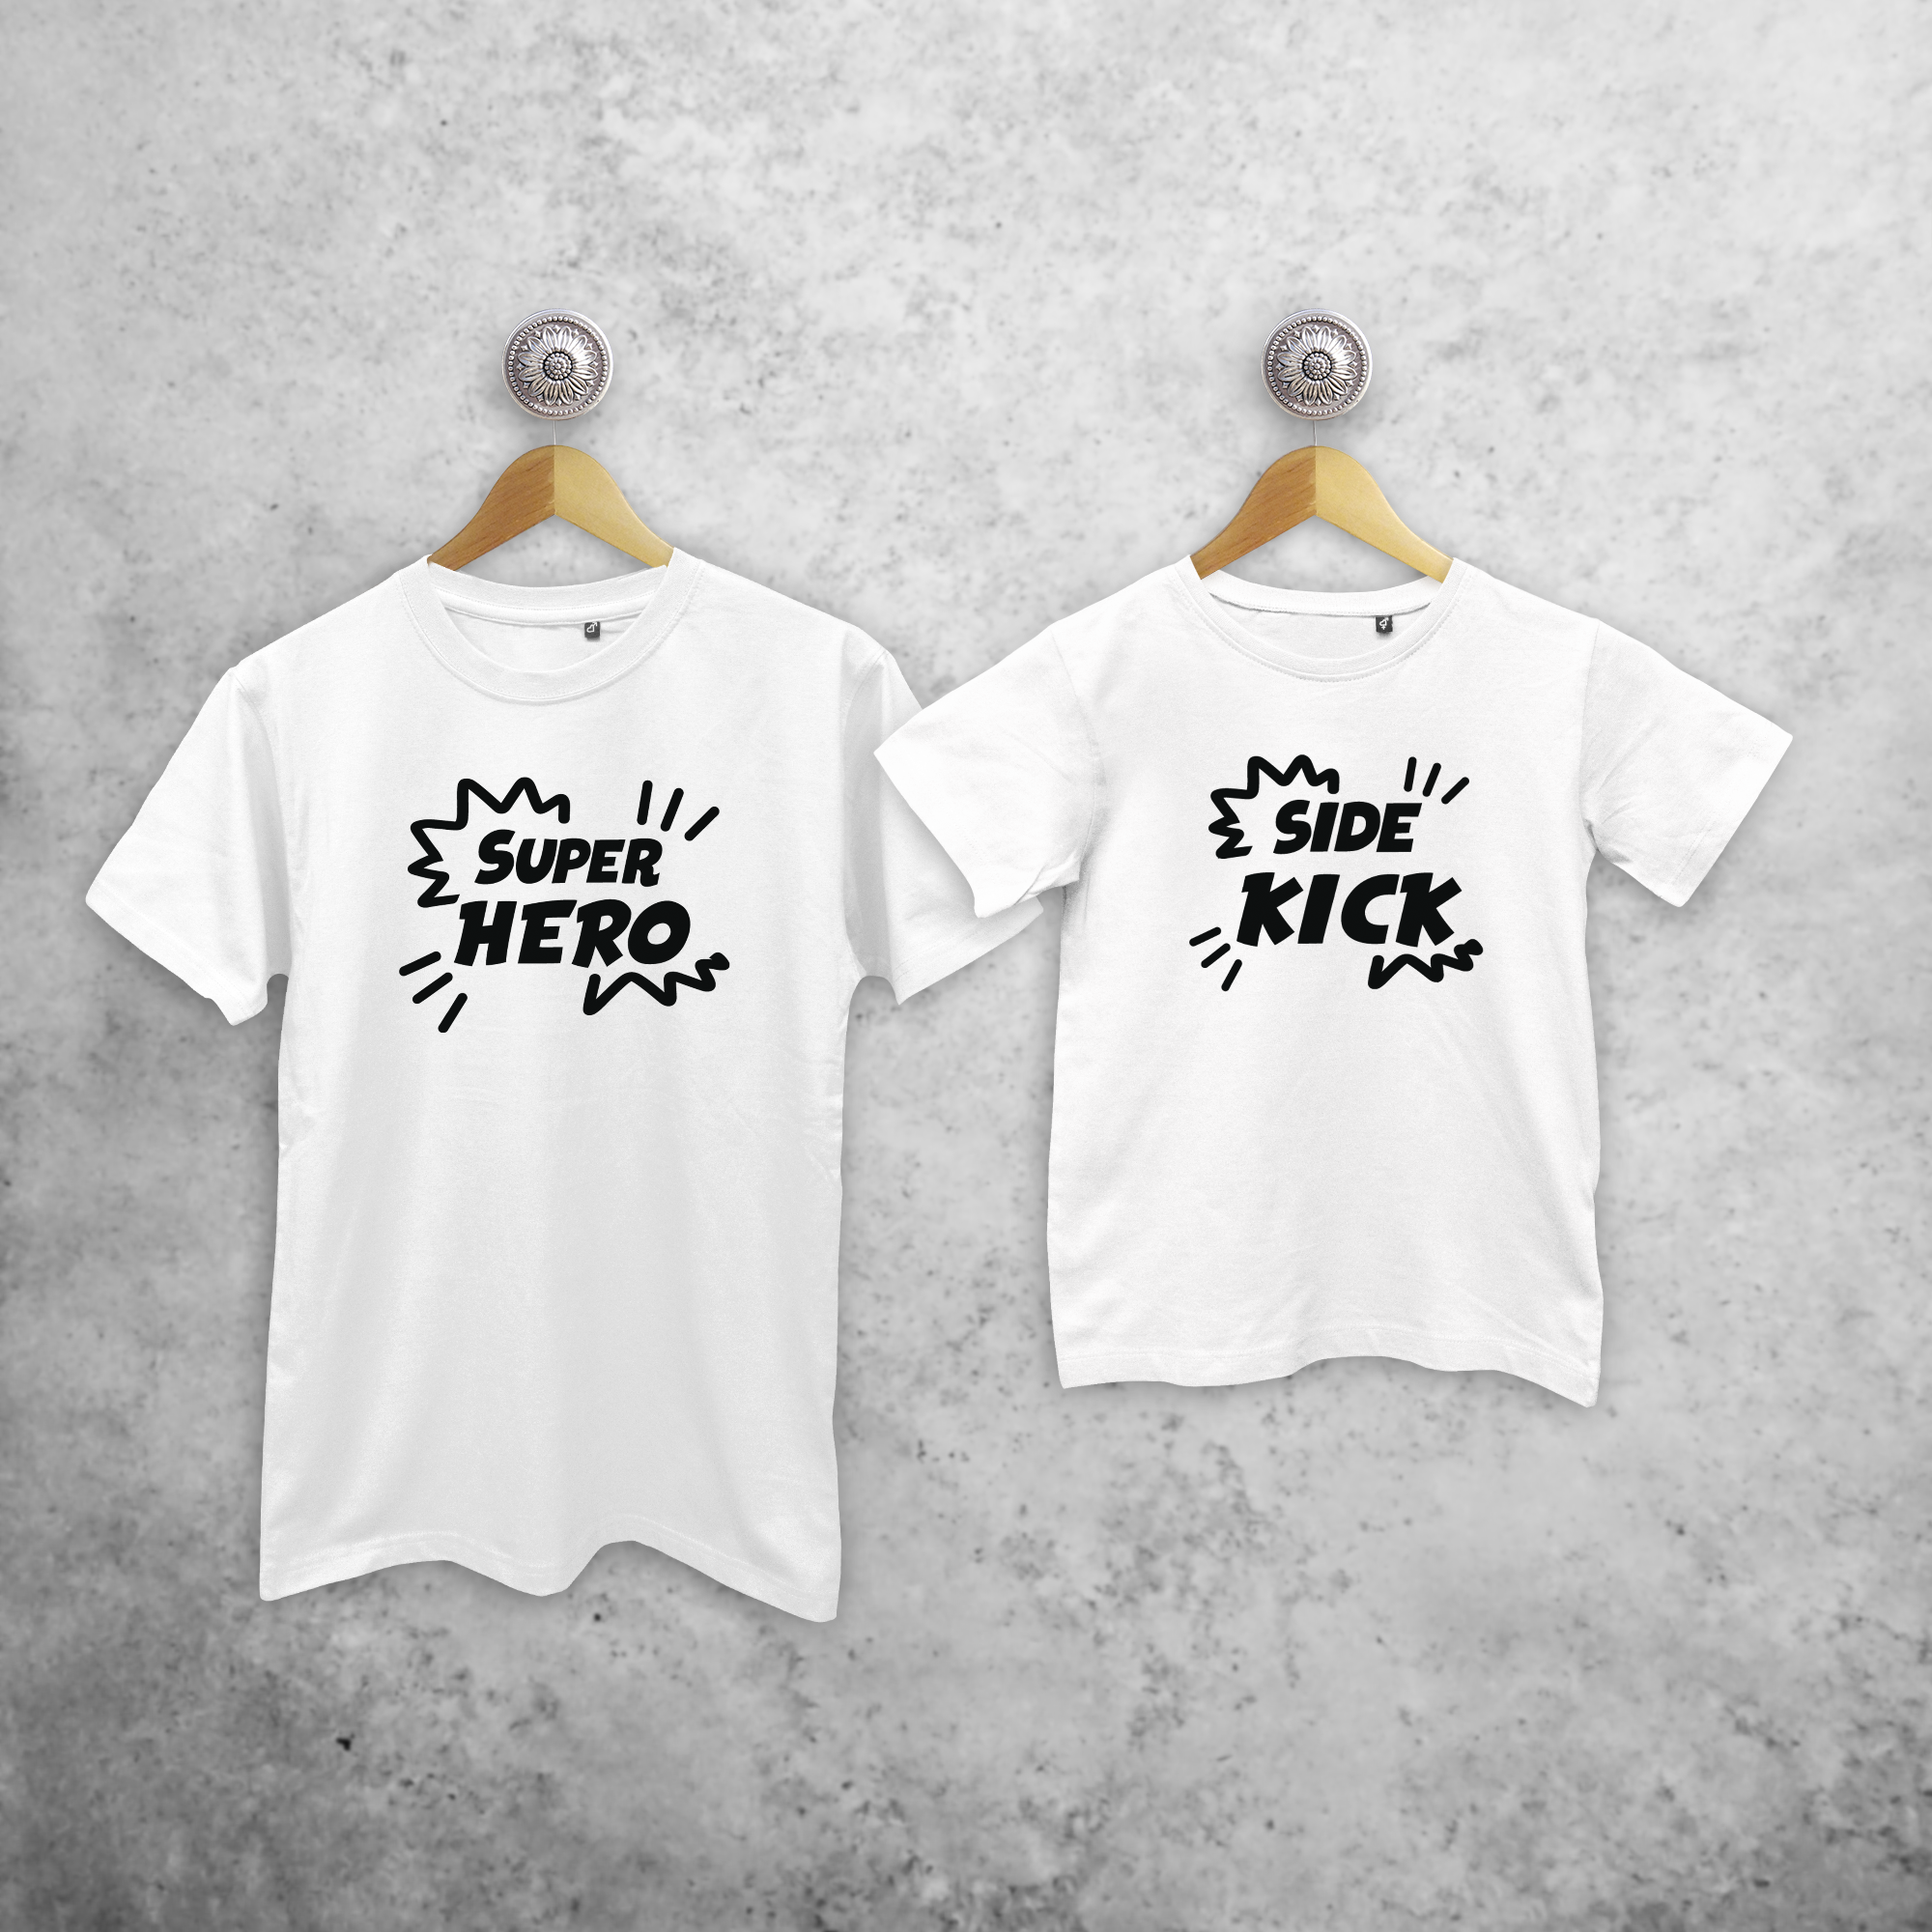 'Super hero' & 'Side kick' matching shirts